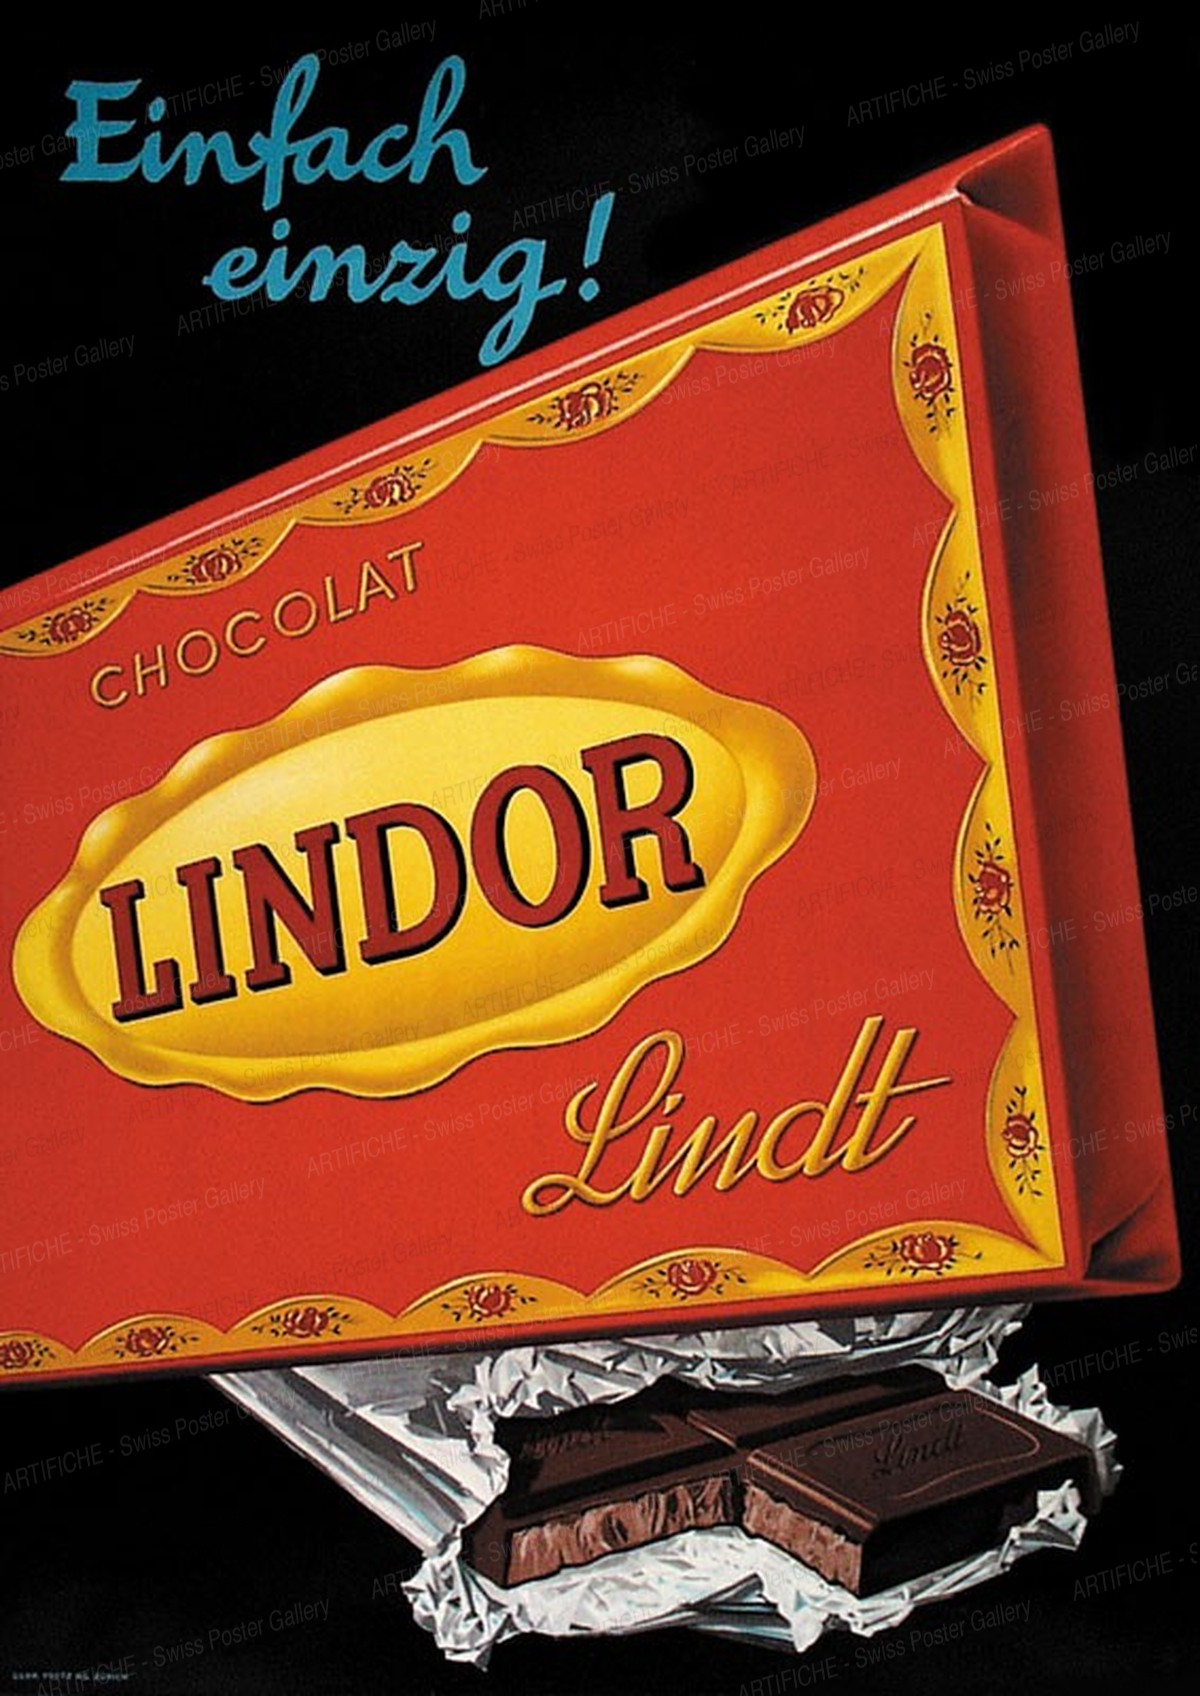 LINDOR – Einfach einzig – Lindt Chocolat, Artist unknown